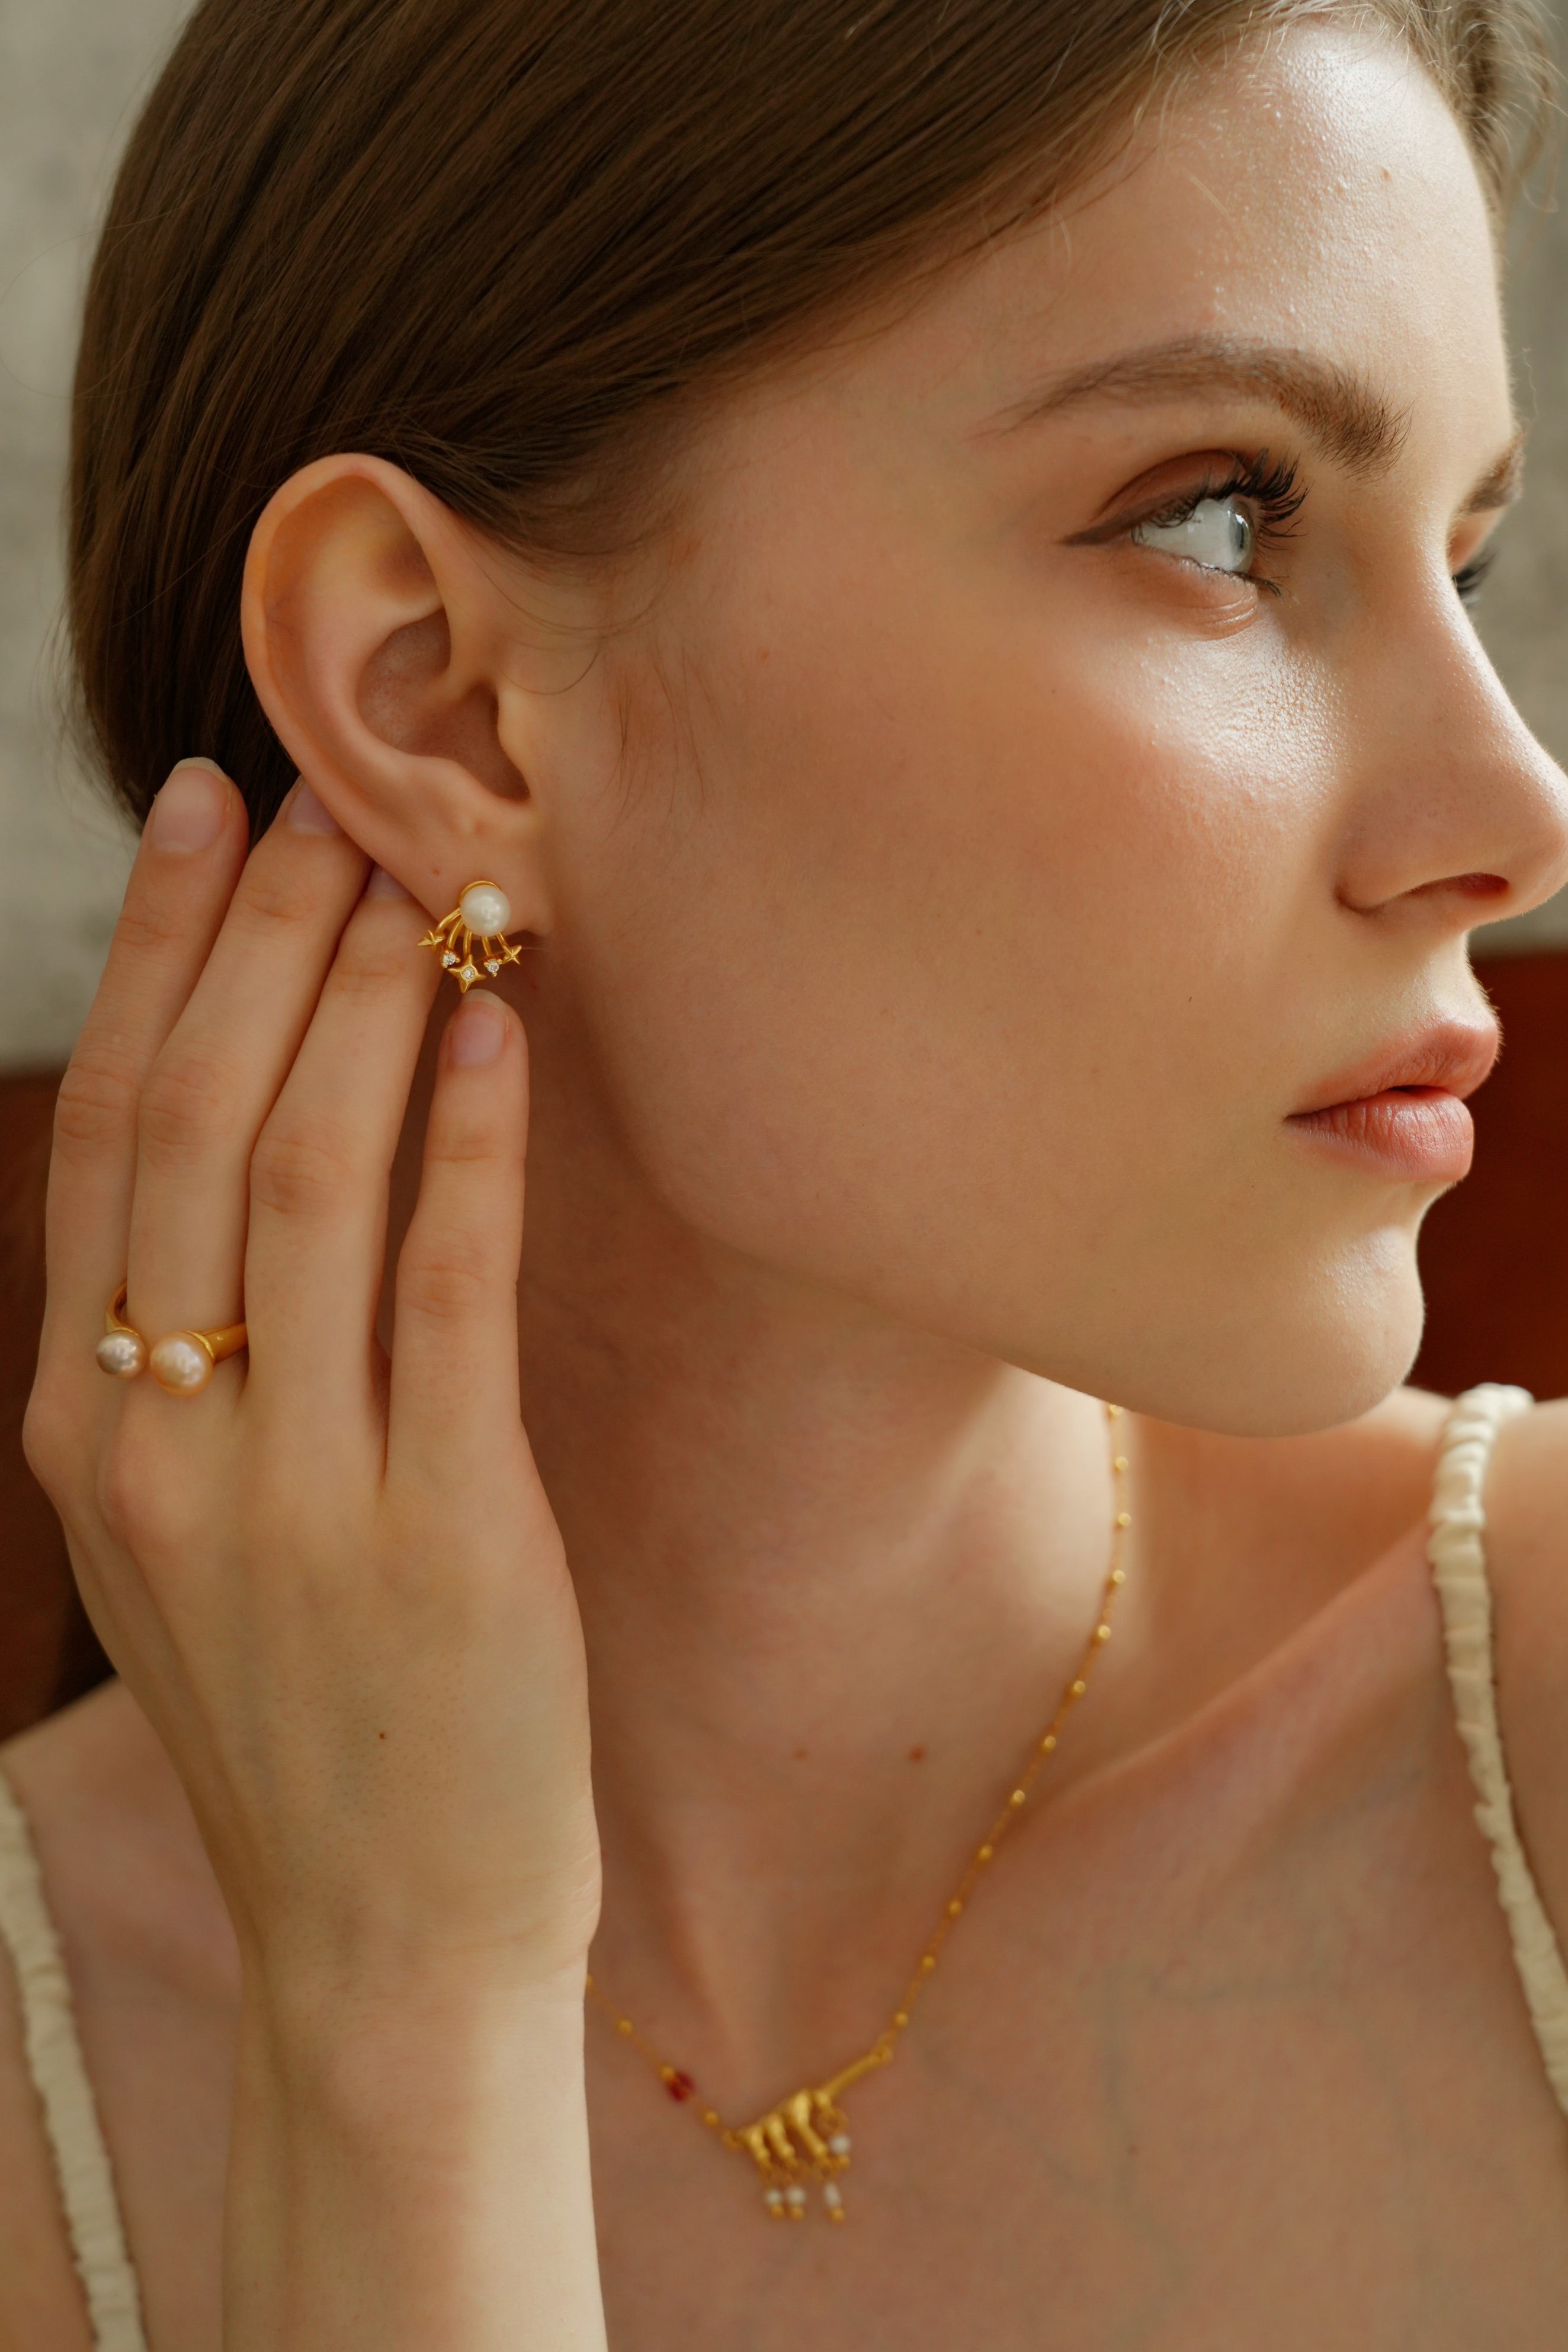 Stellar Pearl Stud Earrings